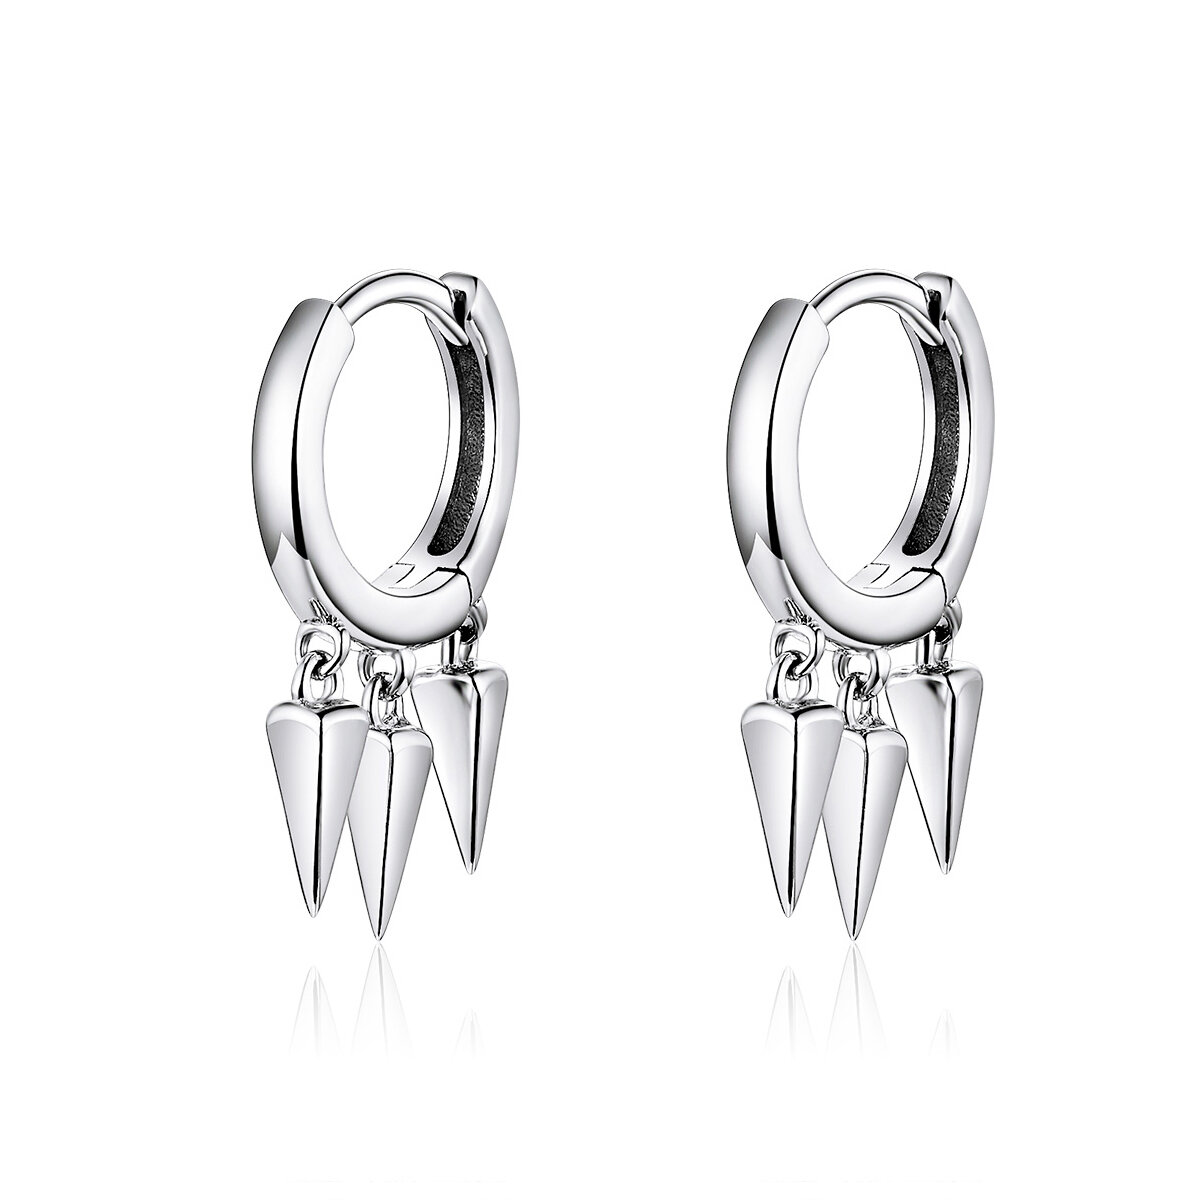 Geometric earrings S925 Sterling Silver Earring